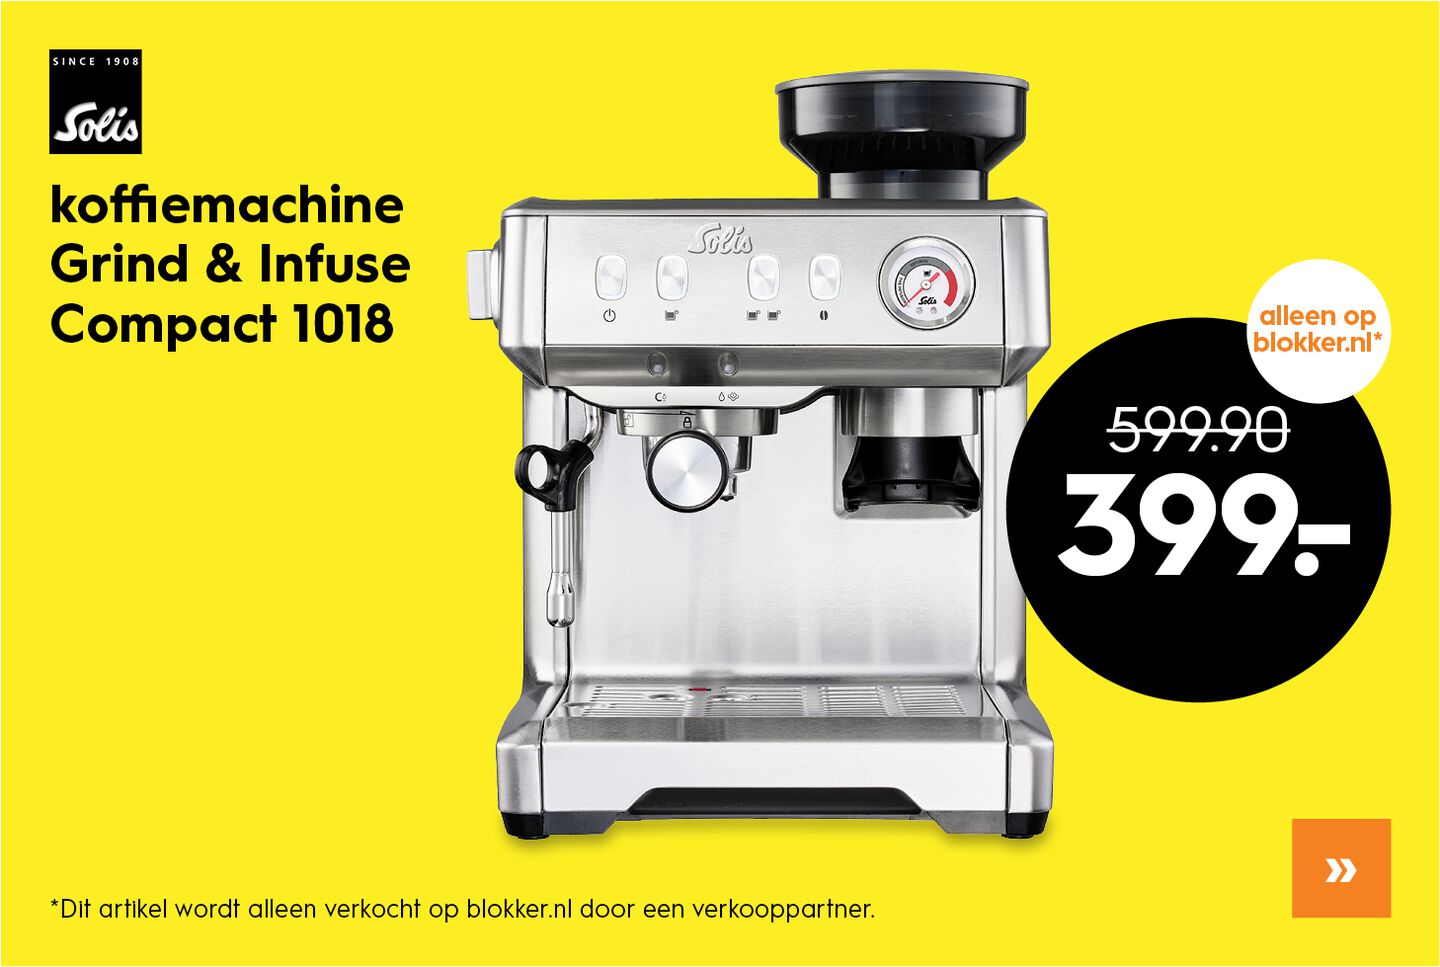 Solis Grind & Infuse Compact 1018 Koffiemachine met Bonen - RVS